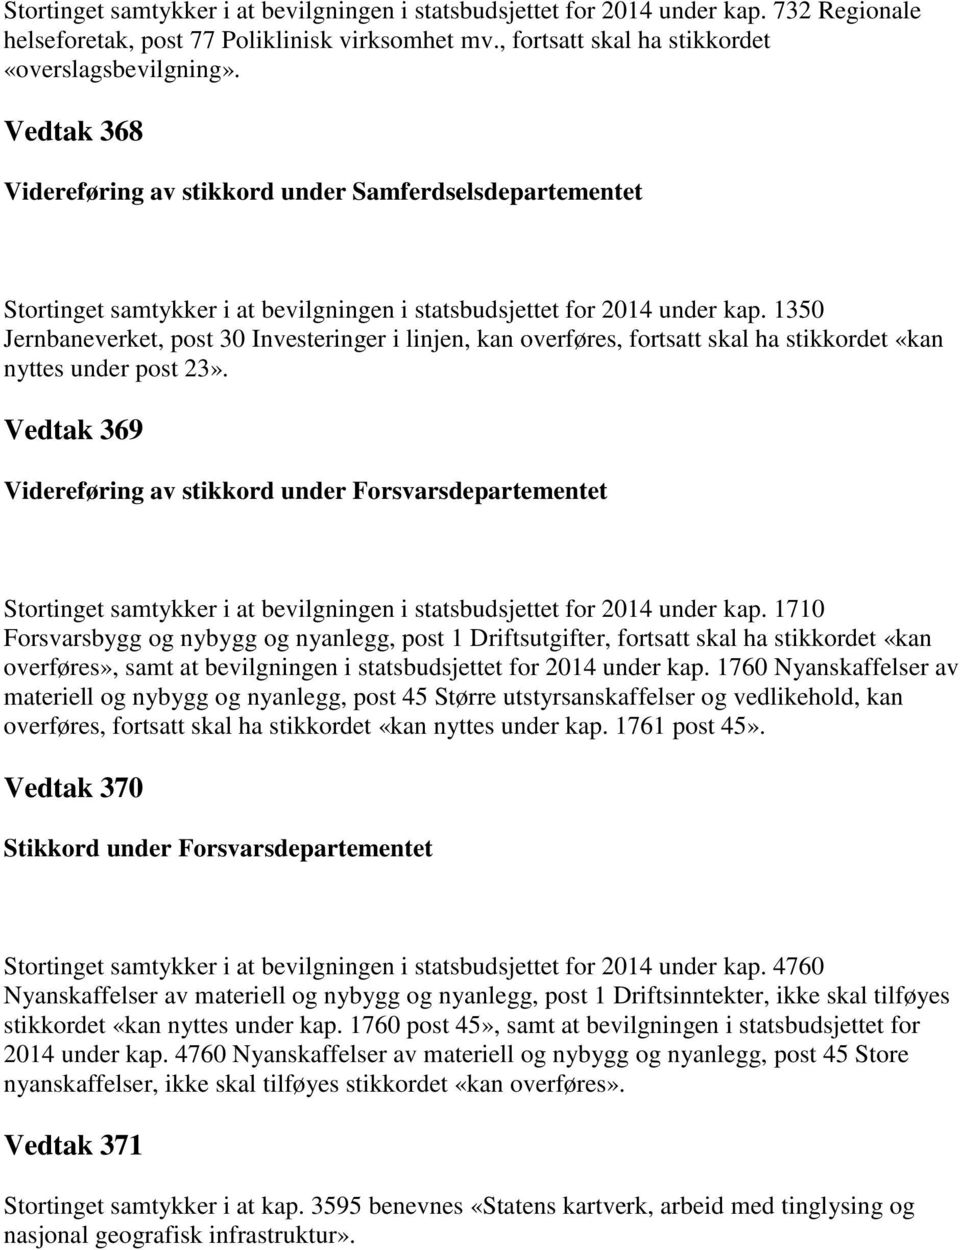 1350 Jernbaneverket, post 30 Investeringer i linjen, kan overføres, fortsatt skal ha stikkordet «kan nyttes under post 23».